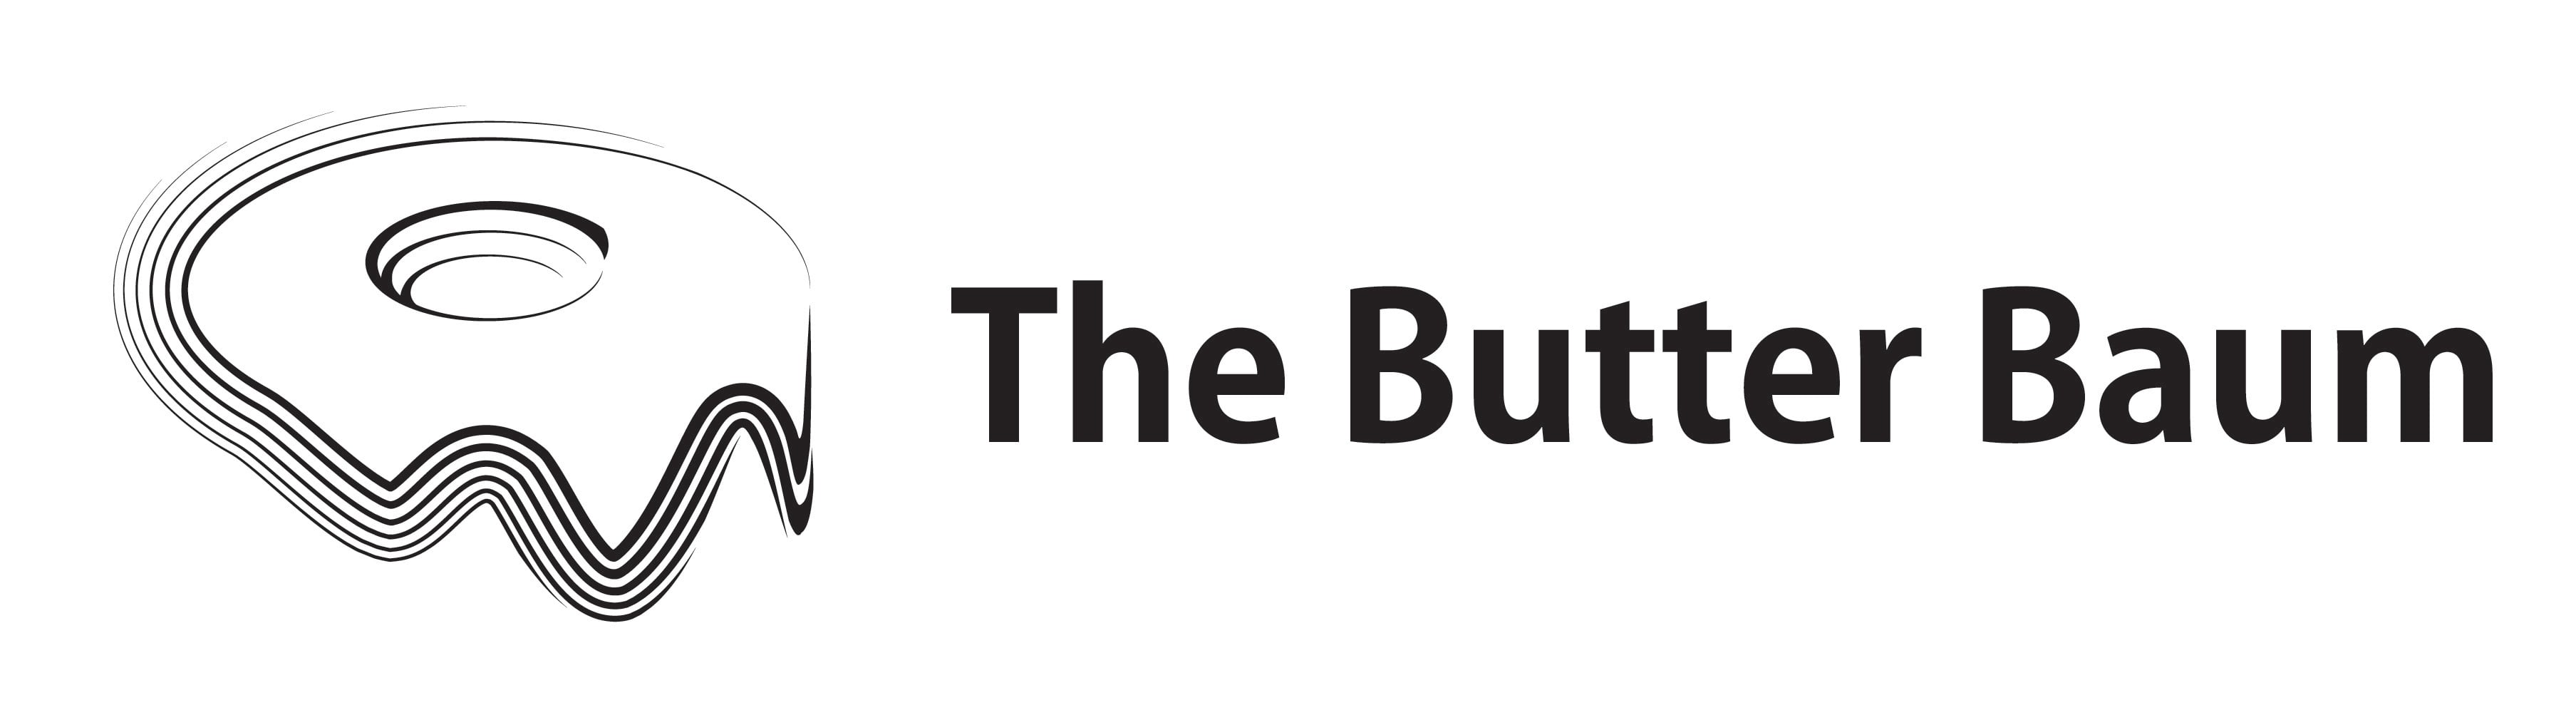 The Butter Baum｜ザ・バター・バーム